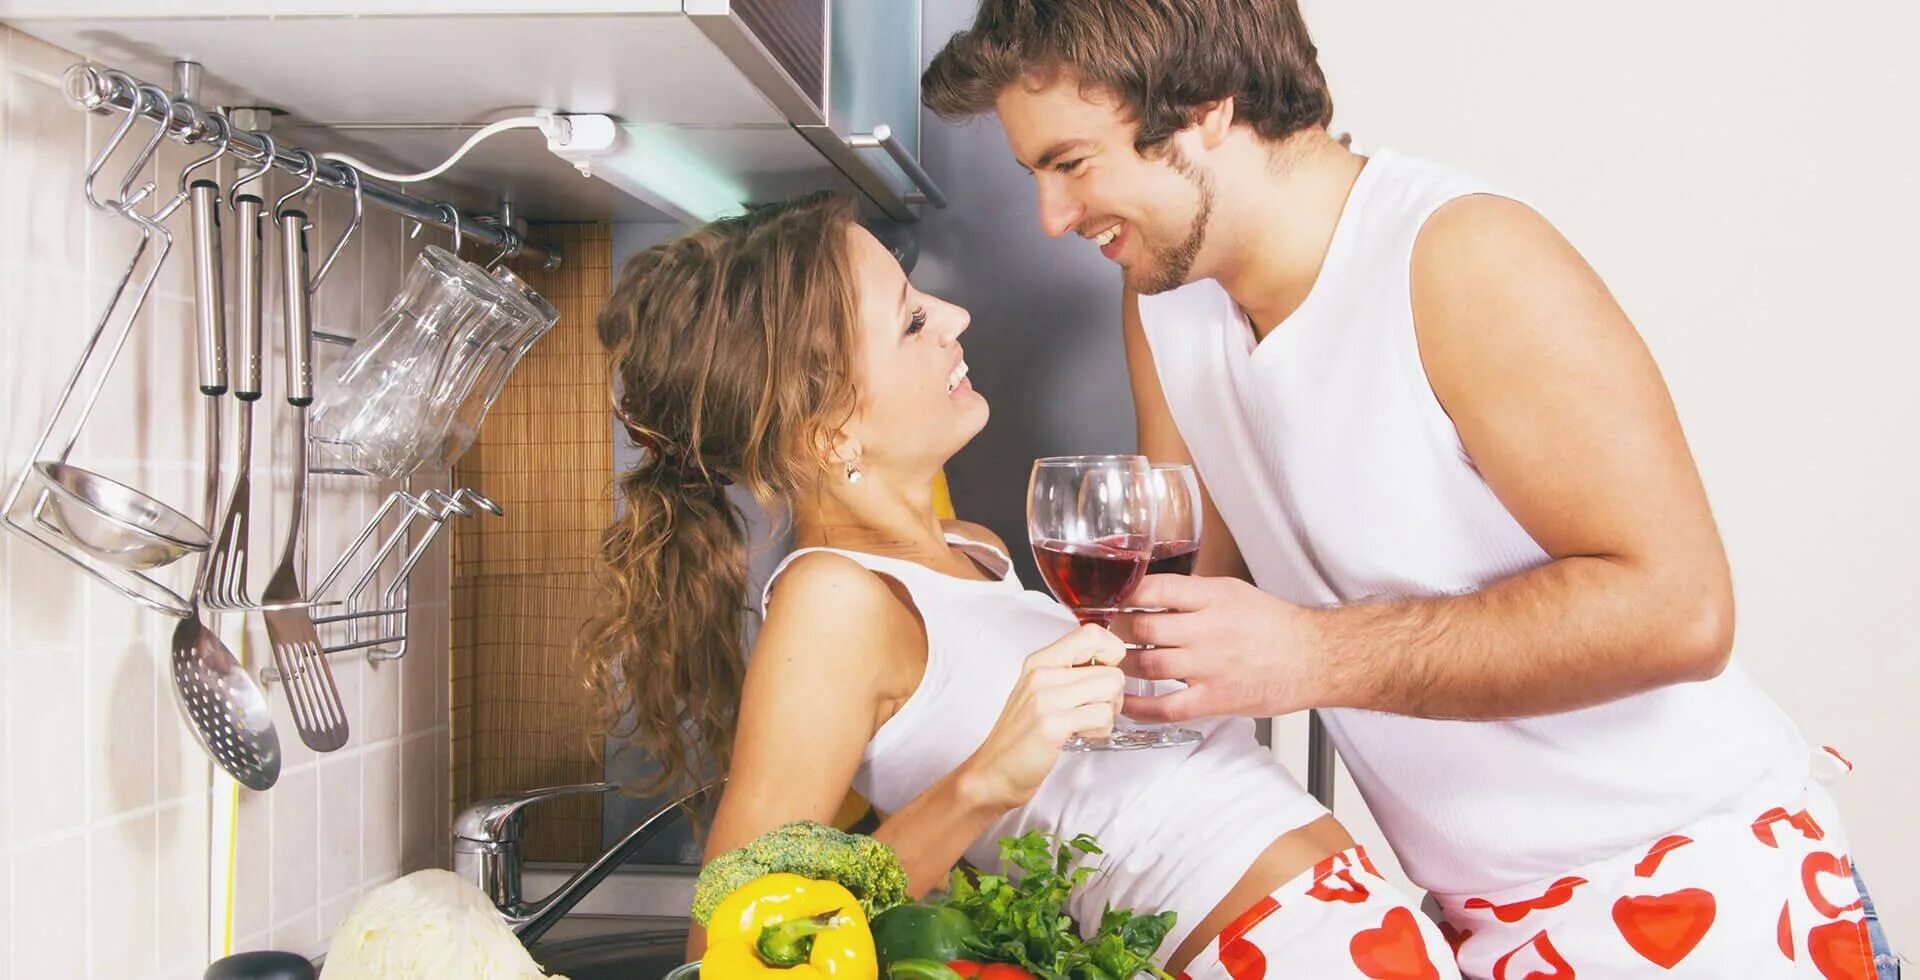 Муж на кухне. Мужчина и женщина на кухне. Фотосессия пар на кухне. Пара влюбленных на кухне. Фотосъемка на кухне пара.